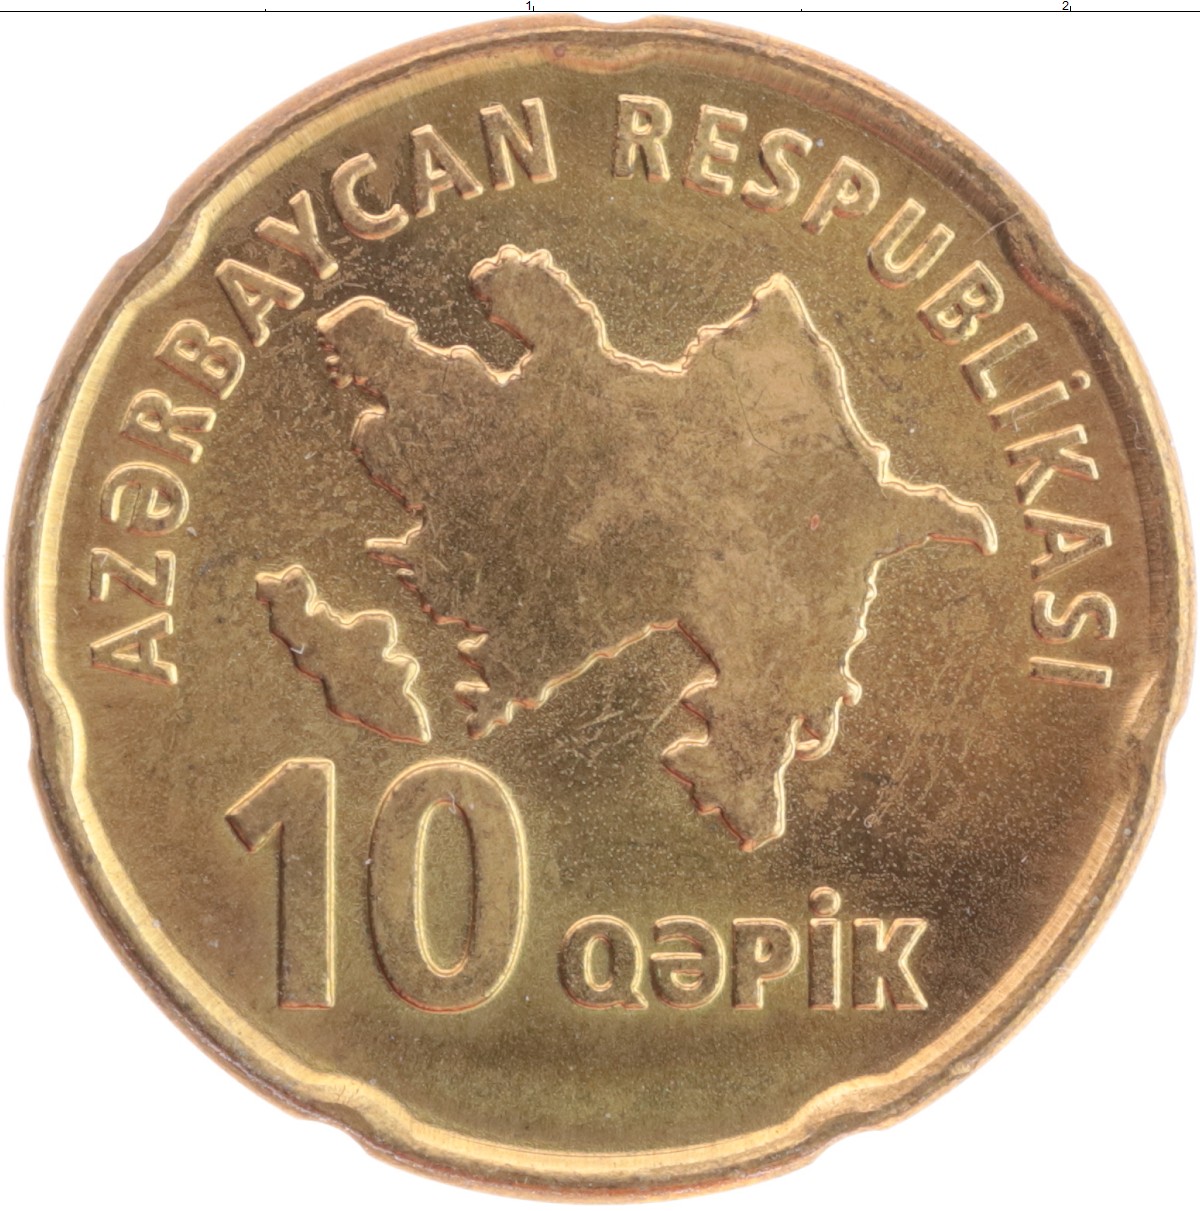 Азербайджанские монеты. Азербайджанская монета 10 гяпиков. Азербайджанские монеты 10 Qepik. Монета Азербайджана 10 гяпиков 2006 года. 20 Qepik.